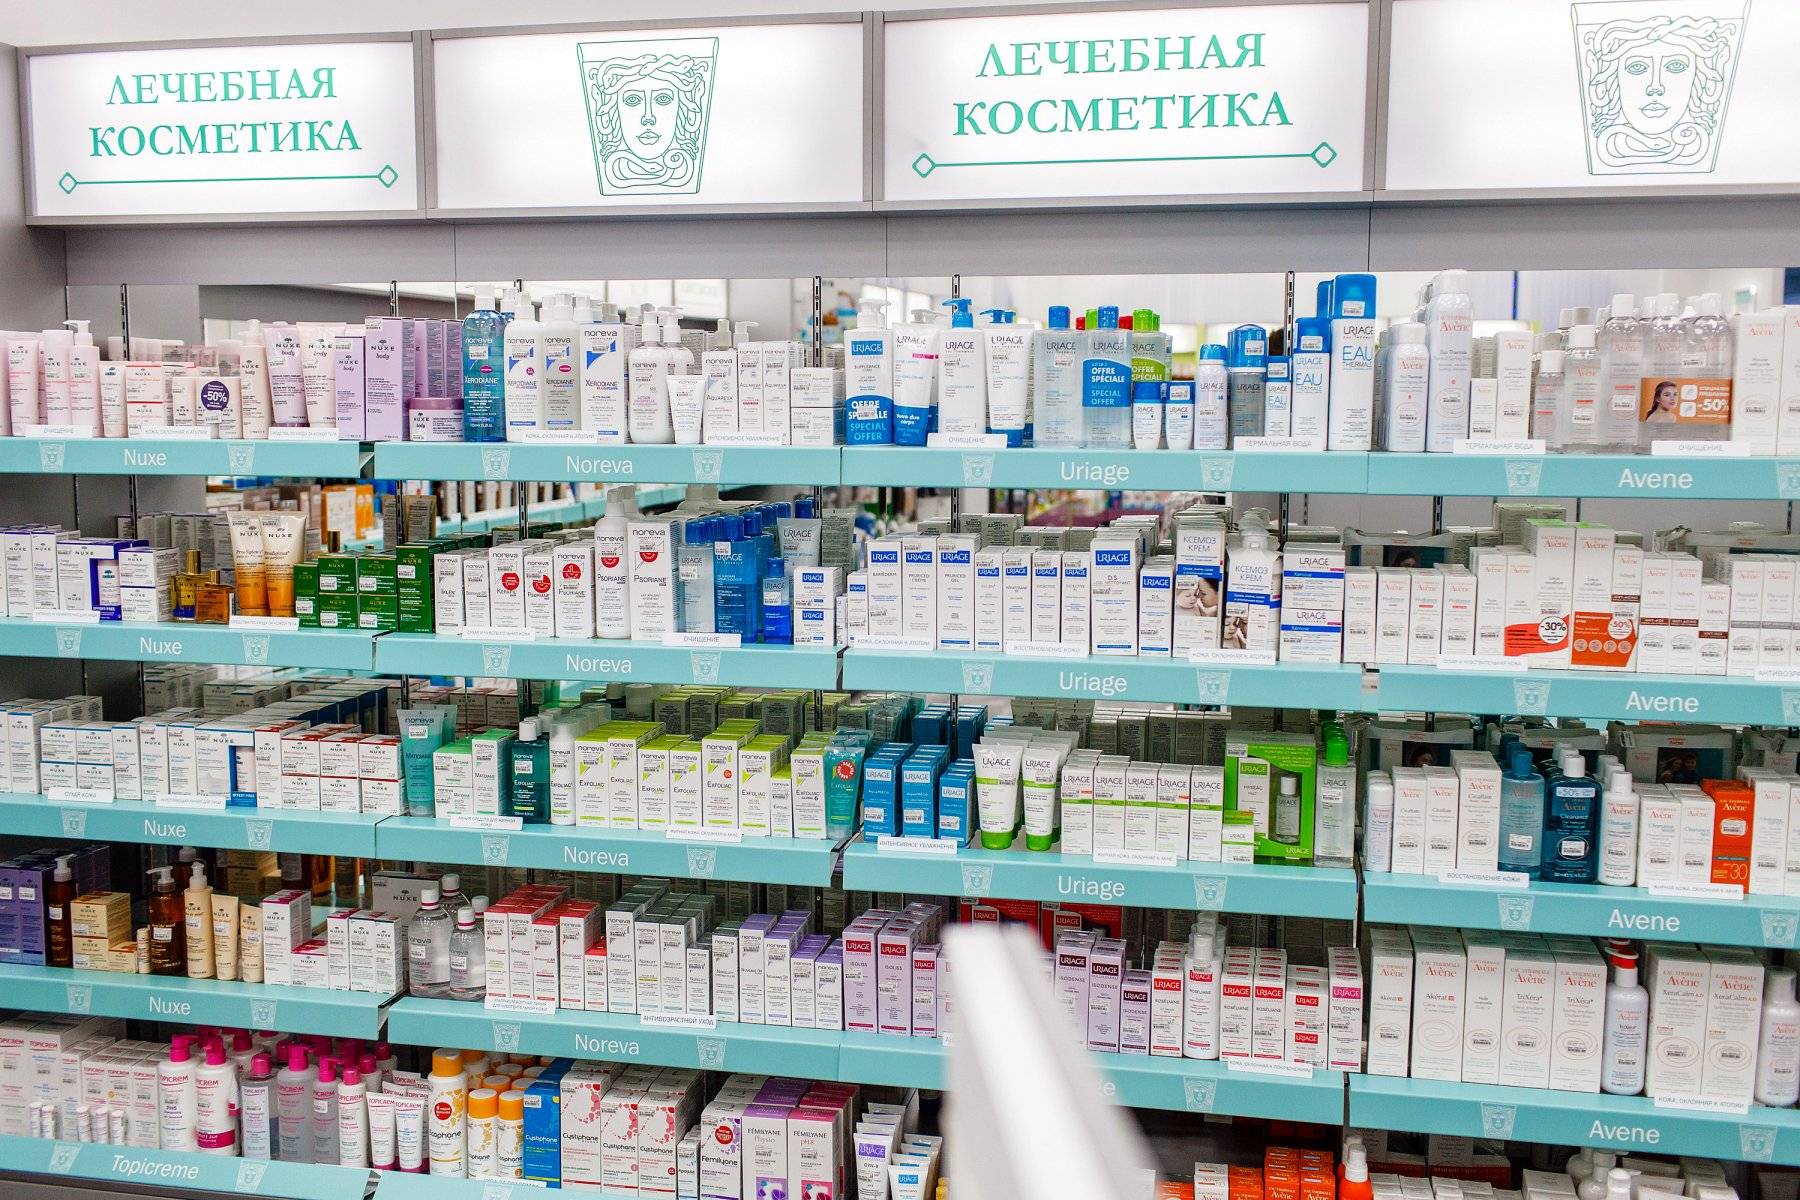 Самая Дешевая Аптека В Астрахани